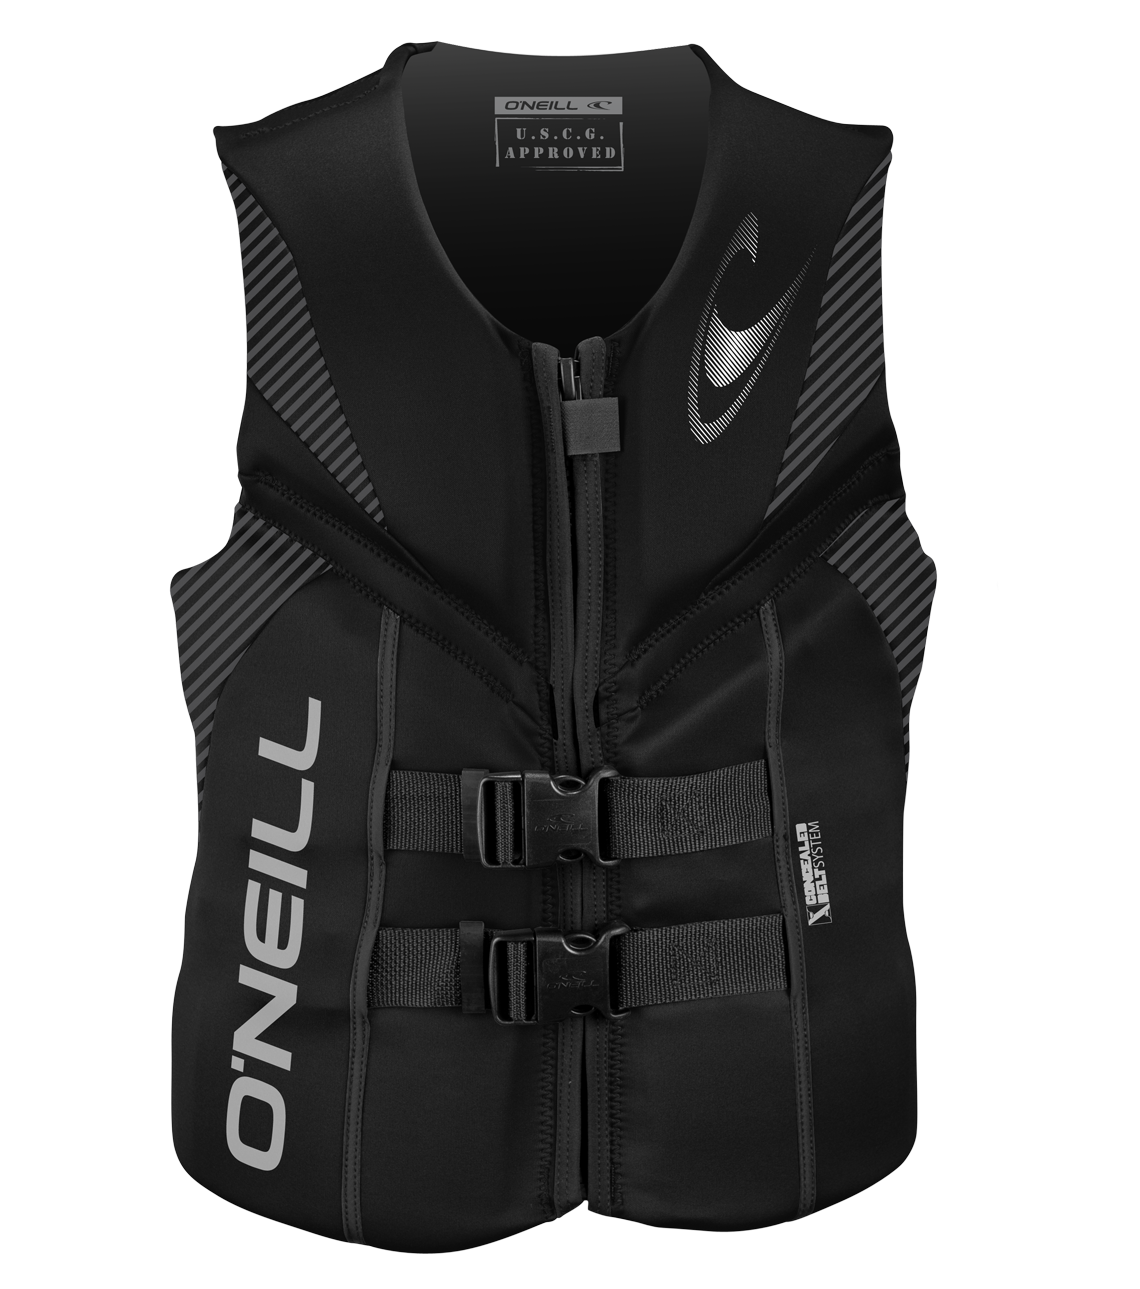 O'Neill Reactor USCG Life Vest C